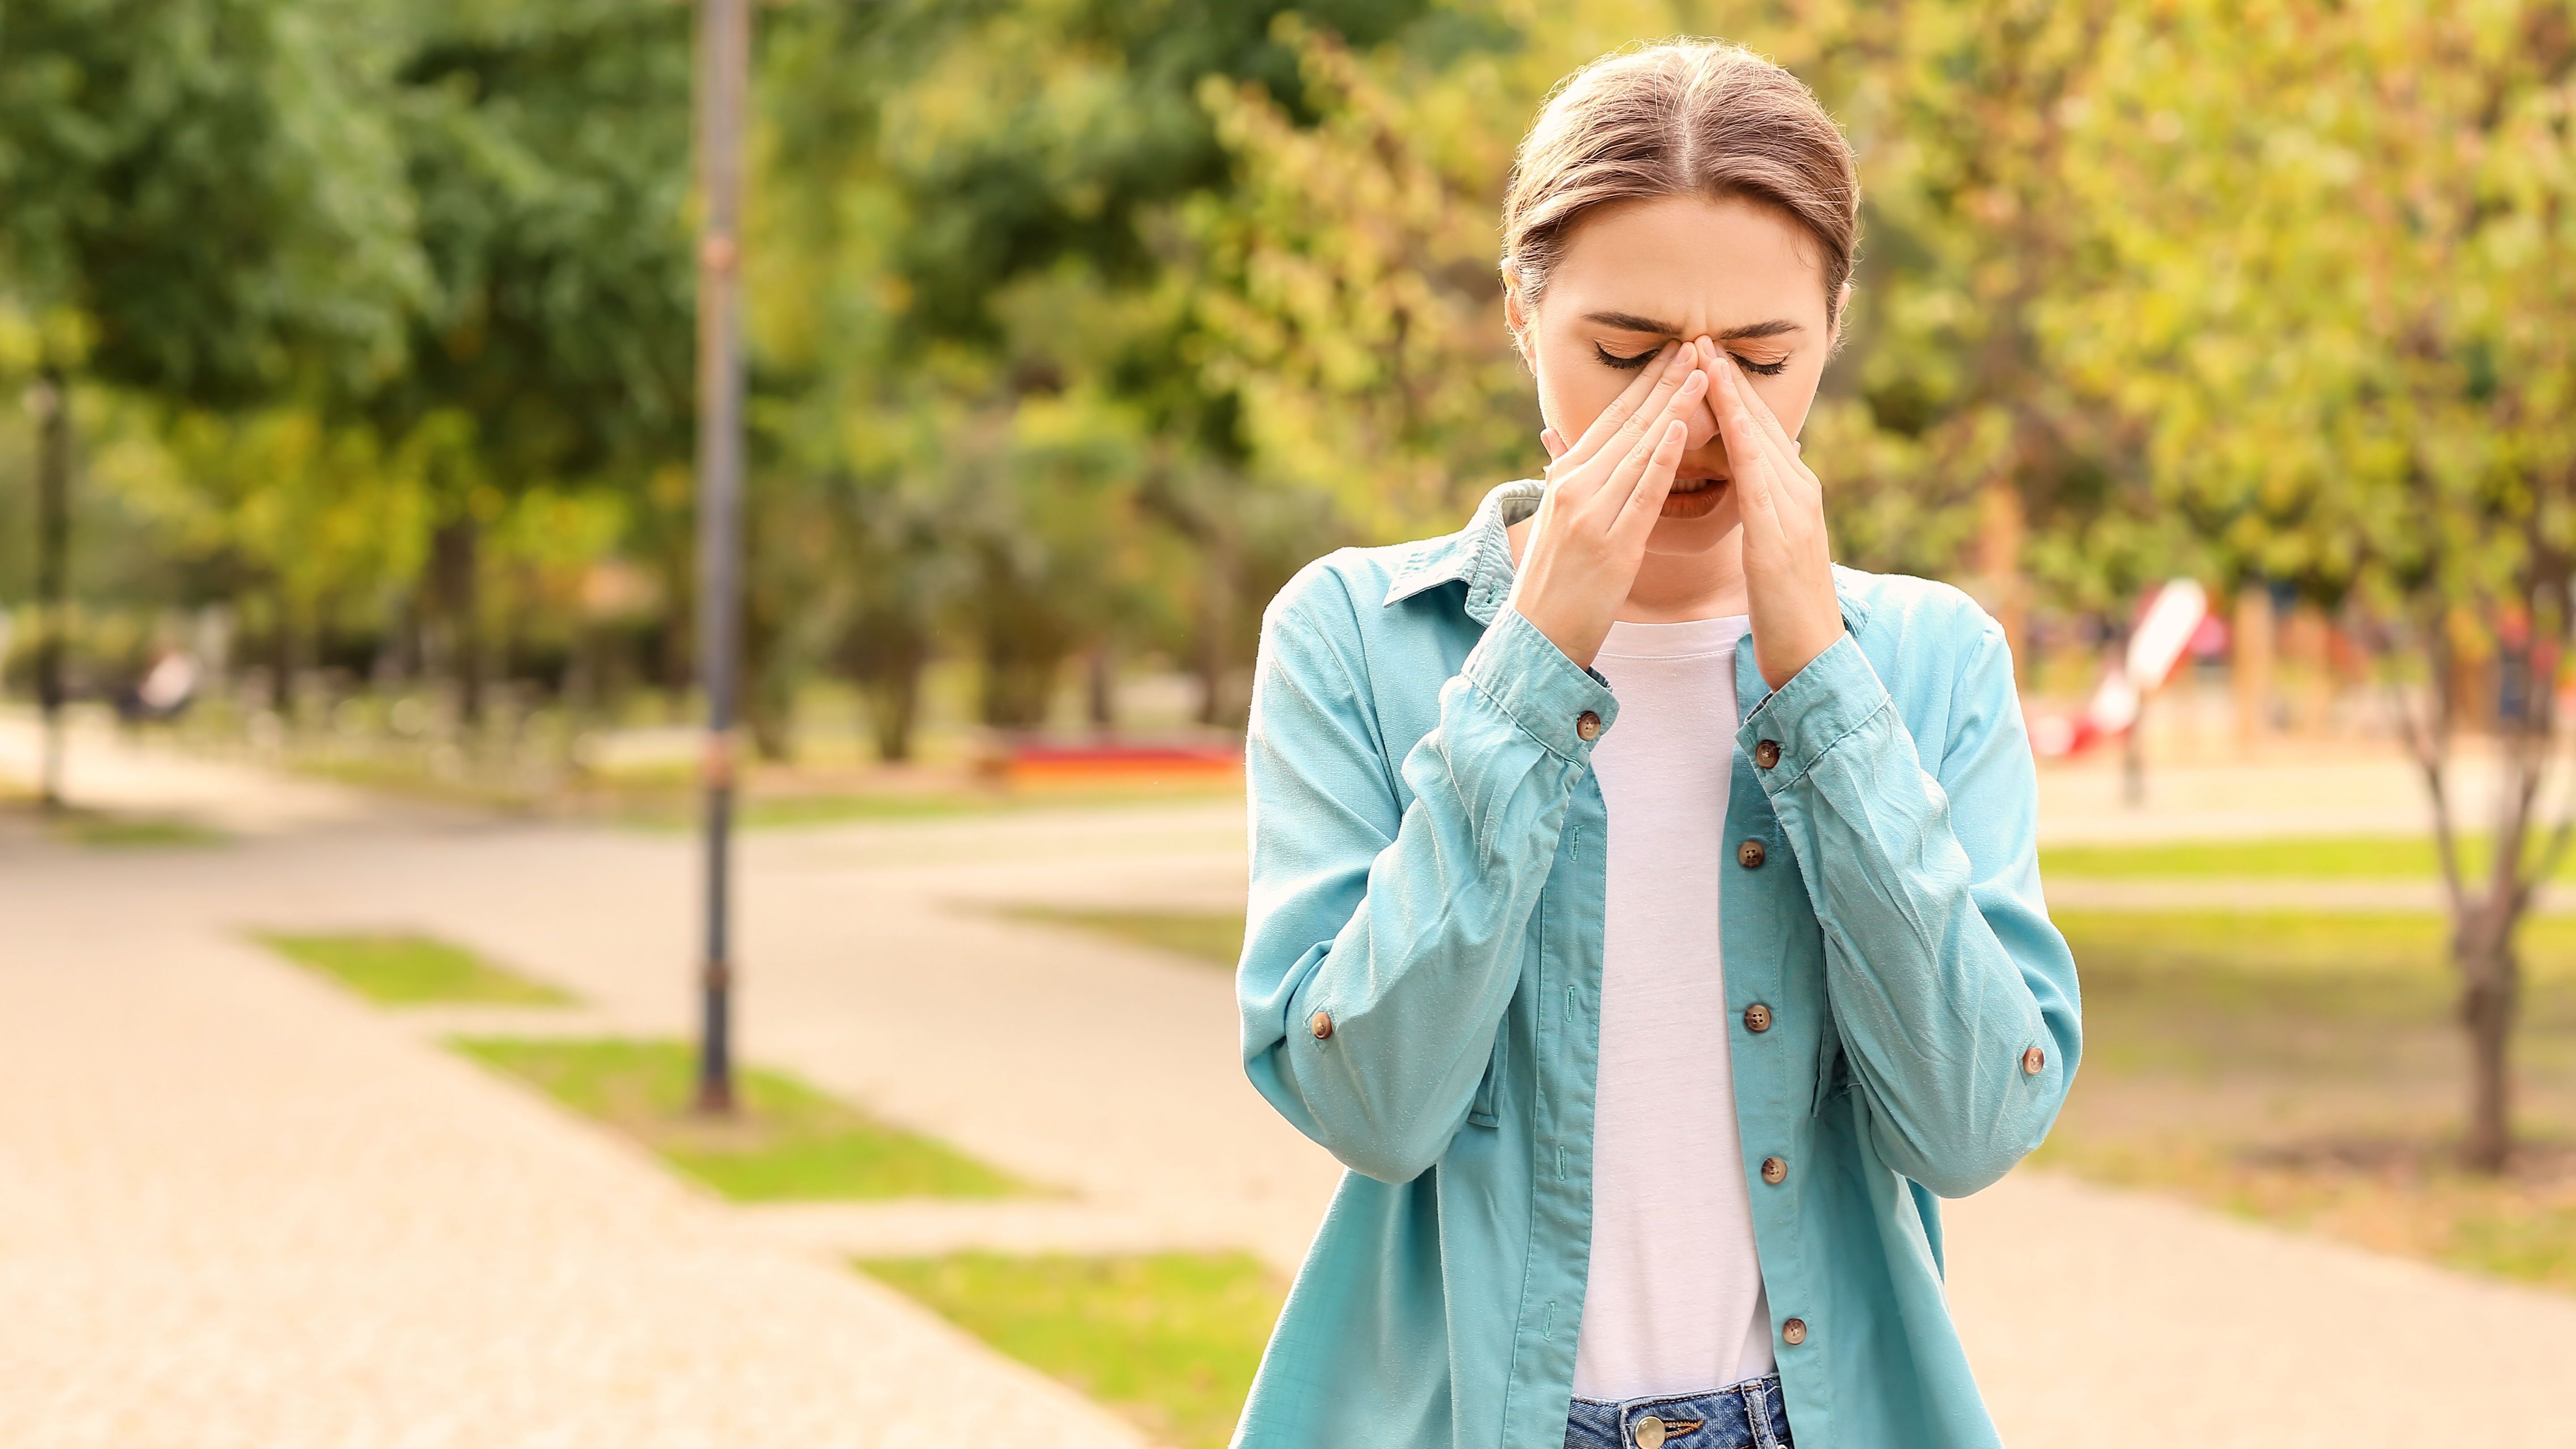 Werden Allergien wirklich immer häufiger? Und woran liegt das?